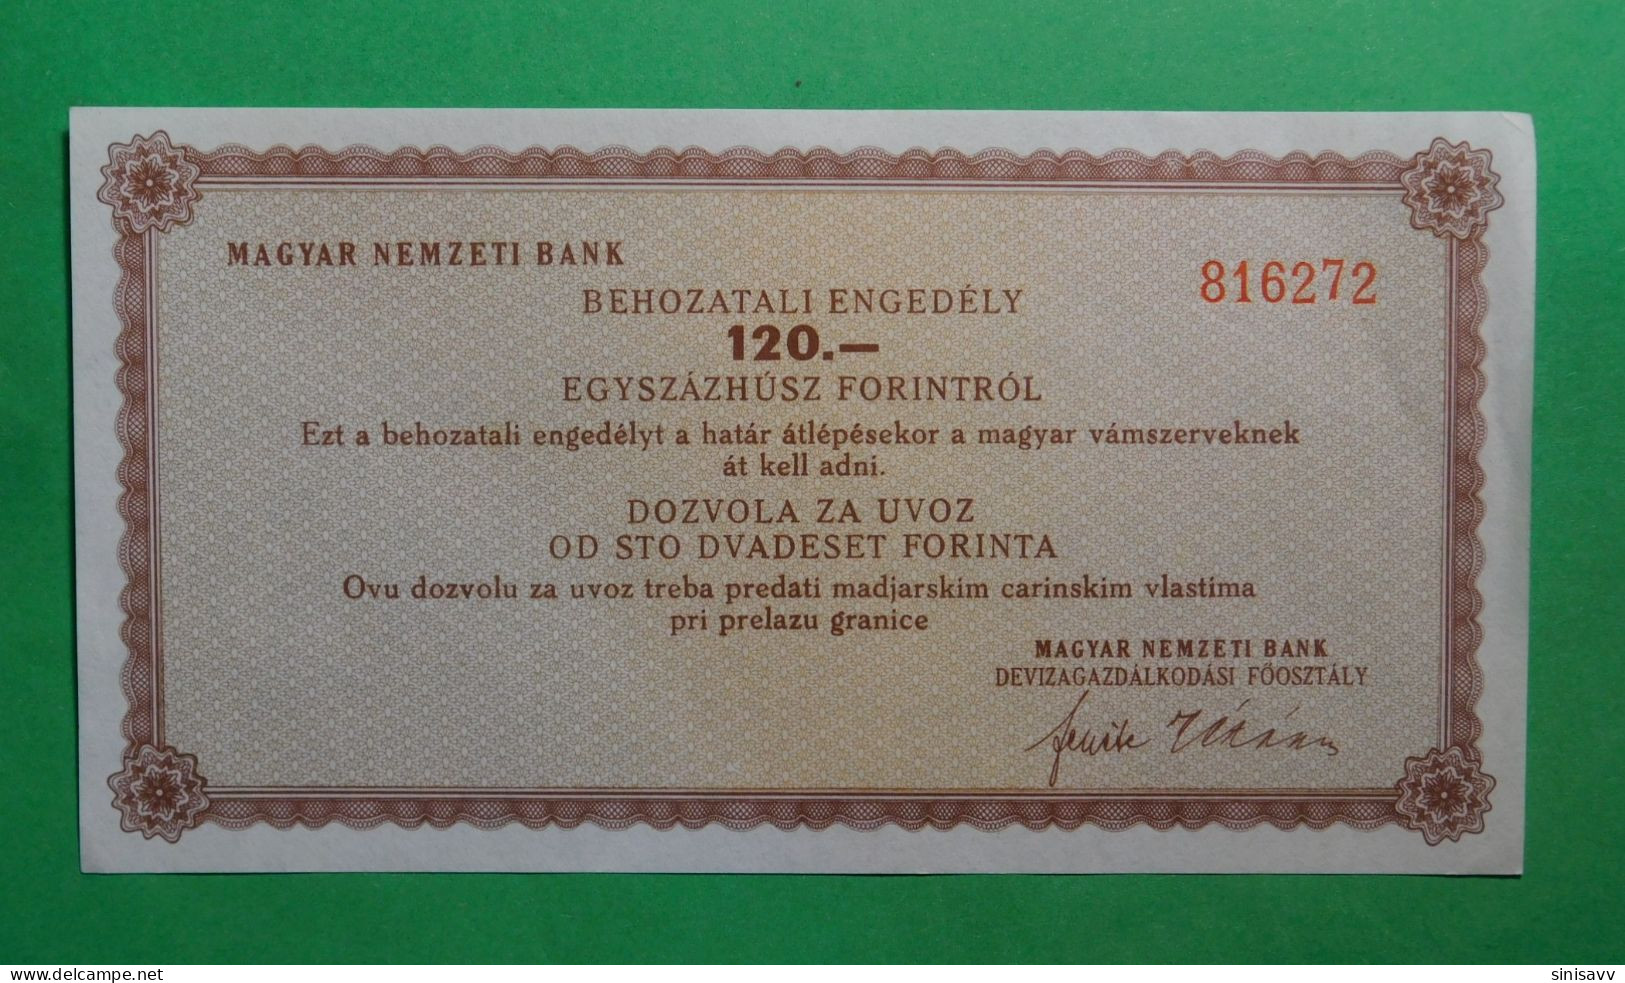 Magyar Nemzeti Bank - Behozatali Engedely 120 Forintrol - Dozvola Za Uvoz Od 120 Forinta - Hungary